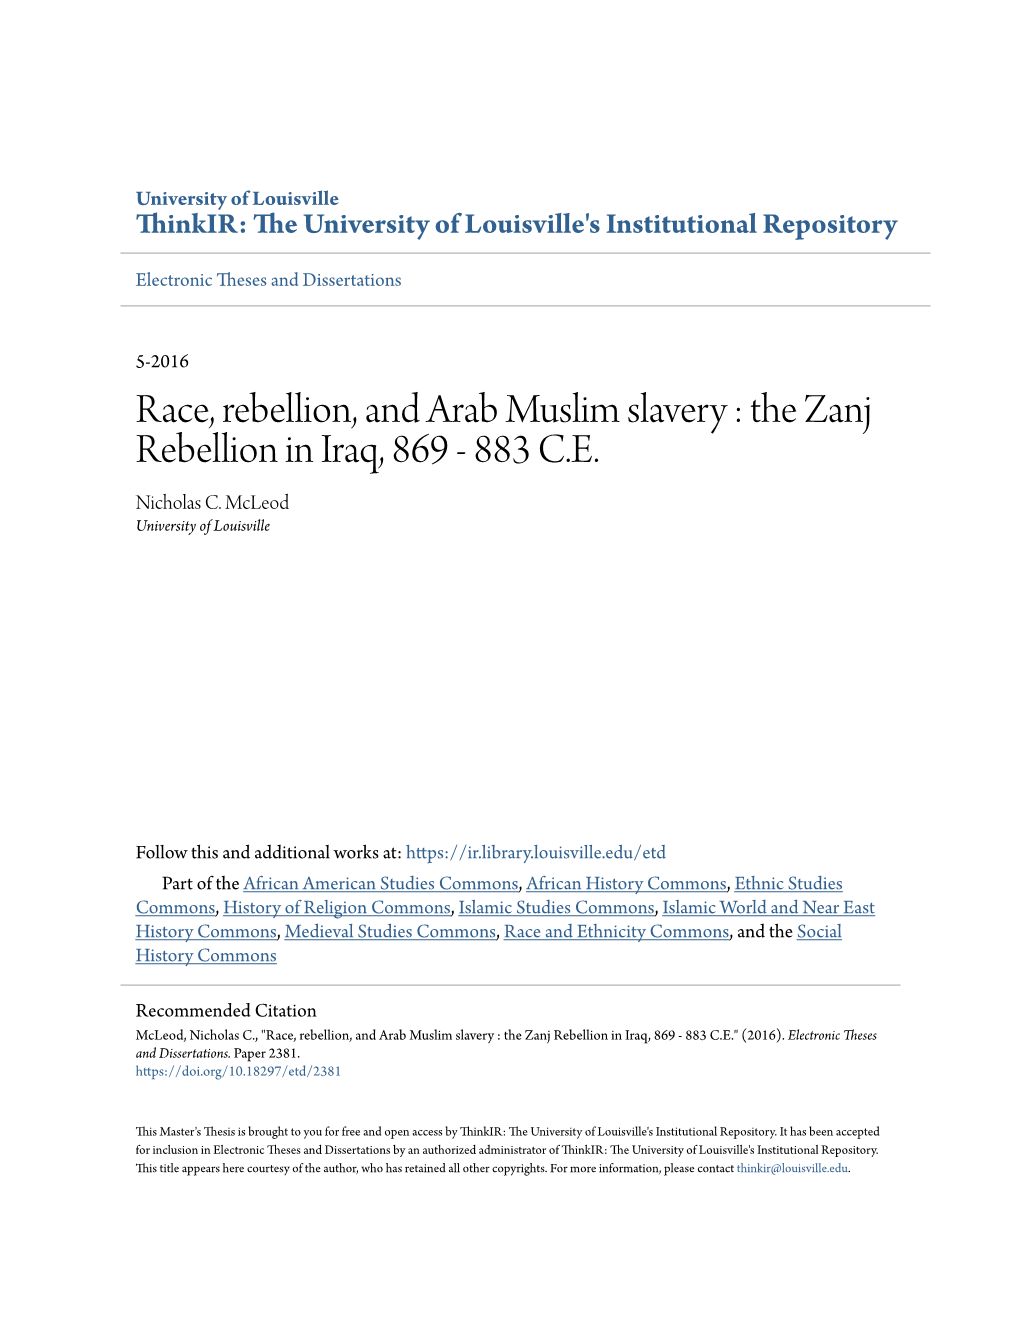 Race, Rebellion, and Arab Muslim Slavery : the Zanj Rebellion in Iraq, 869 - 883 C.E